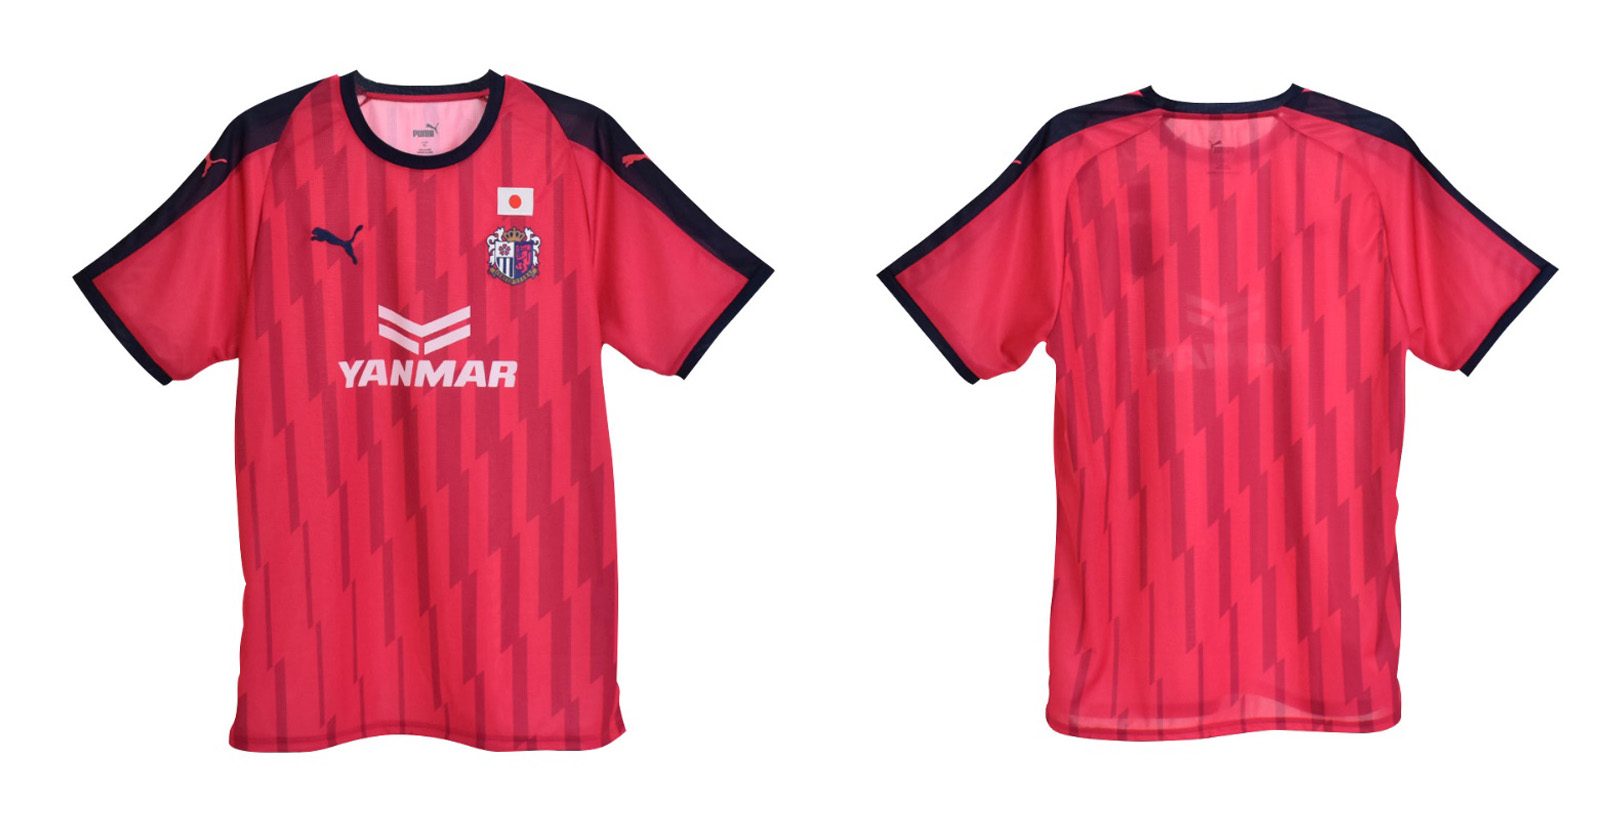 セレッソ大阪がaclユニフォームを発表 プーマの Disruptive Stripe に濃淡ピンクを配色 2chフットボールまとめアンテナ